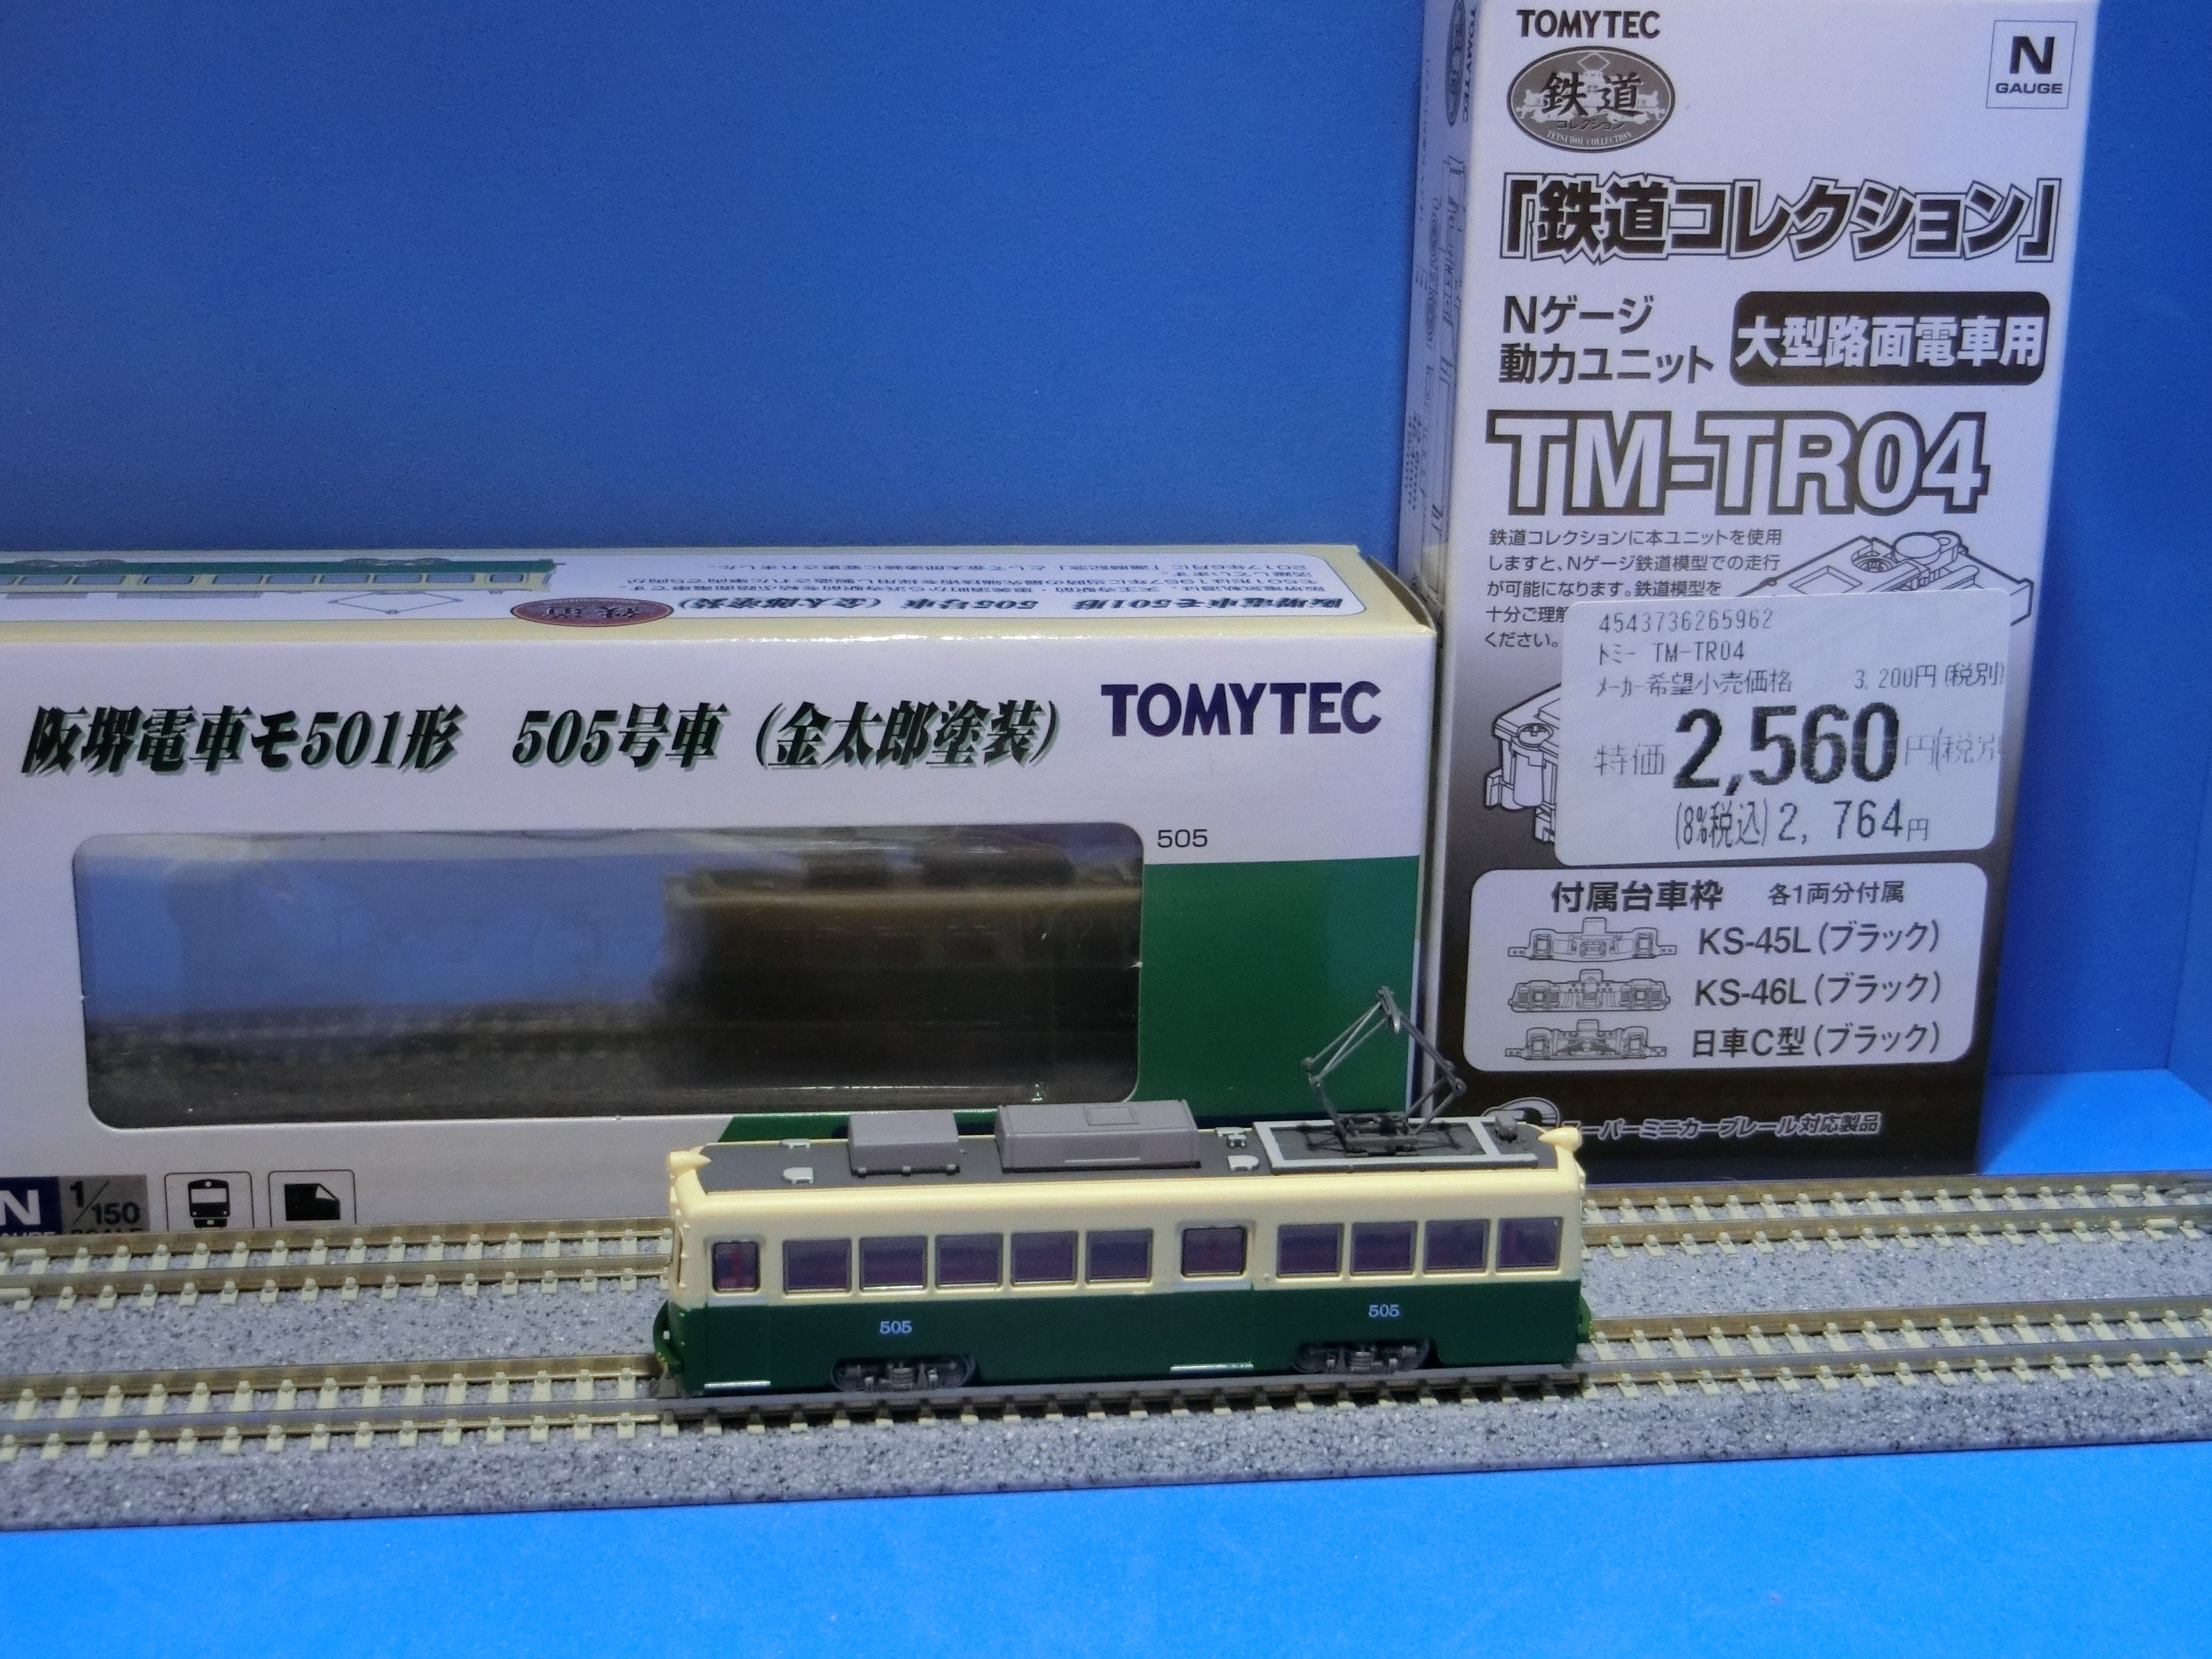 トミーテック 鉄道コレクション 阪堺電車モ501形 1 150 雲形イエロー 501号車 ZN94541 鉄道模型 Nゲージスケール